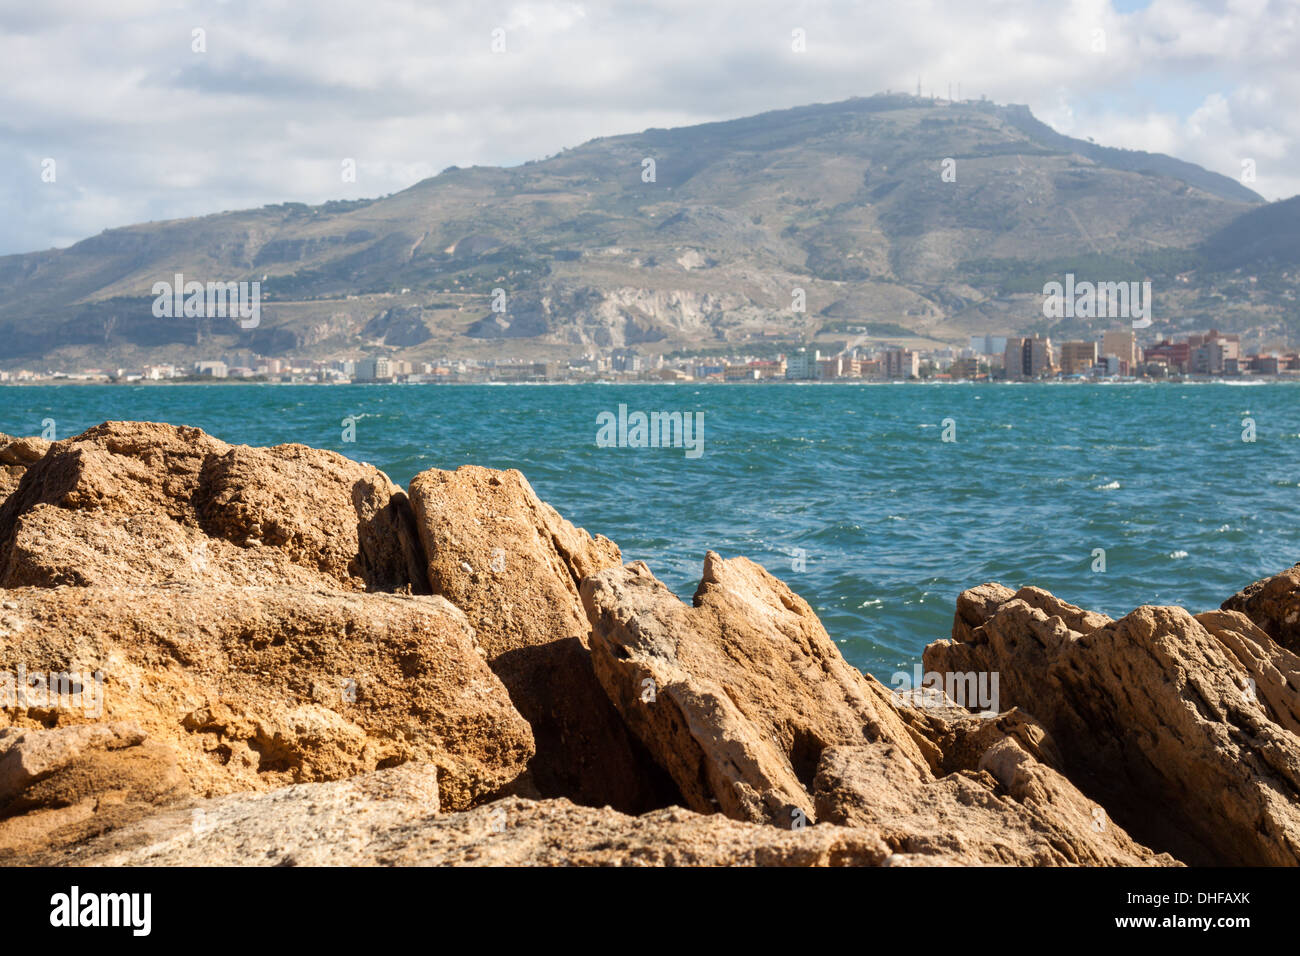 sea, mountain, rocks, stones, day, blue Stock Photo